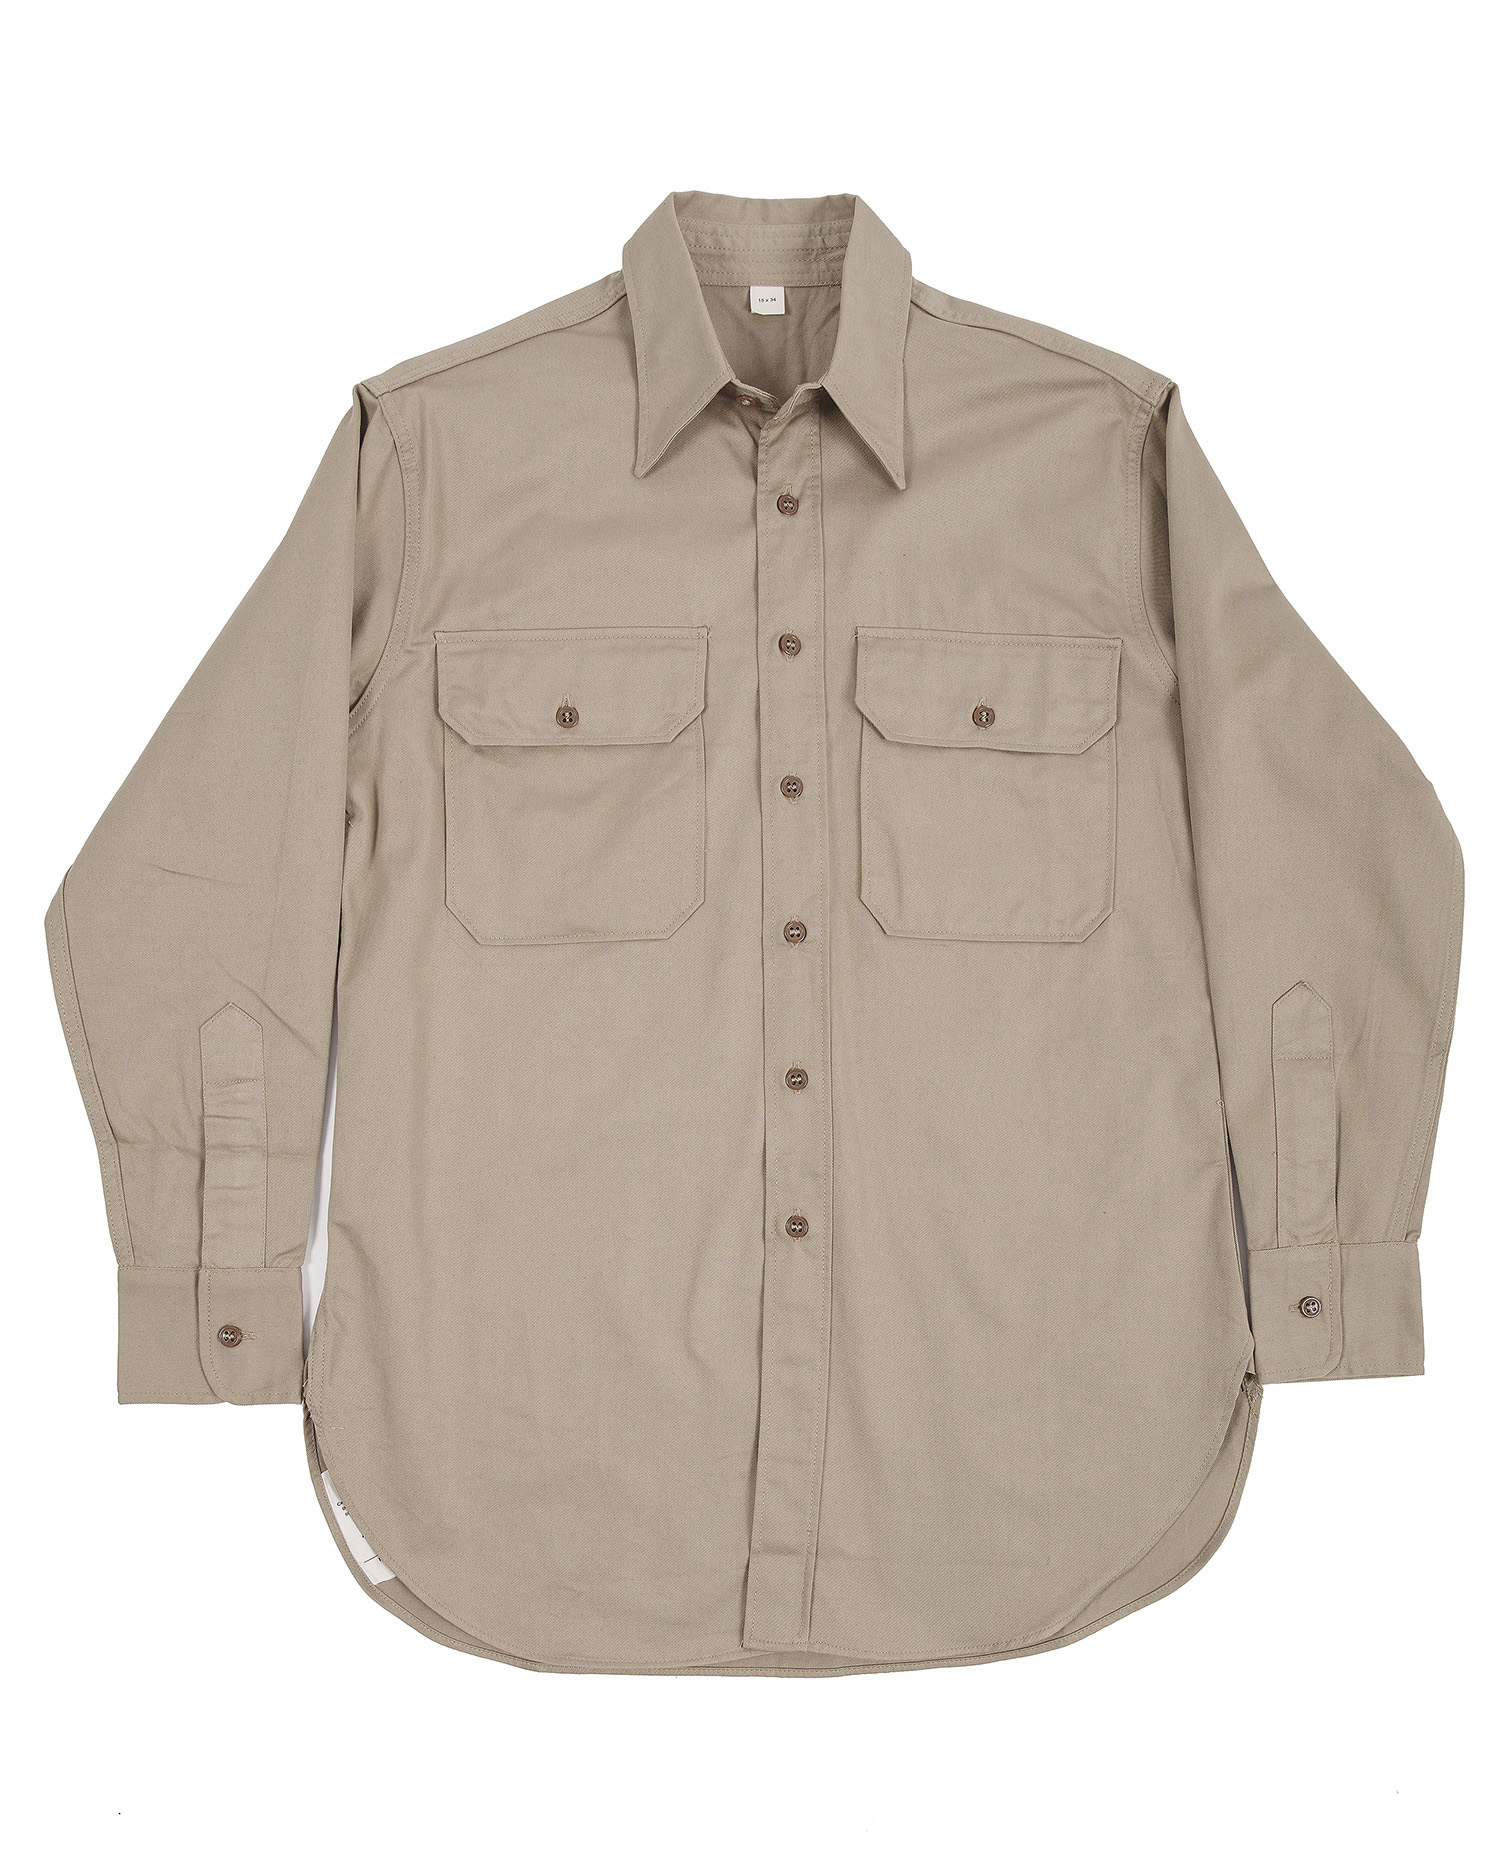 US WWII Army Khaki Shirt